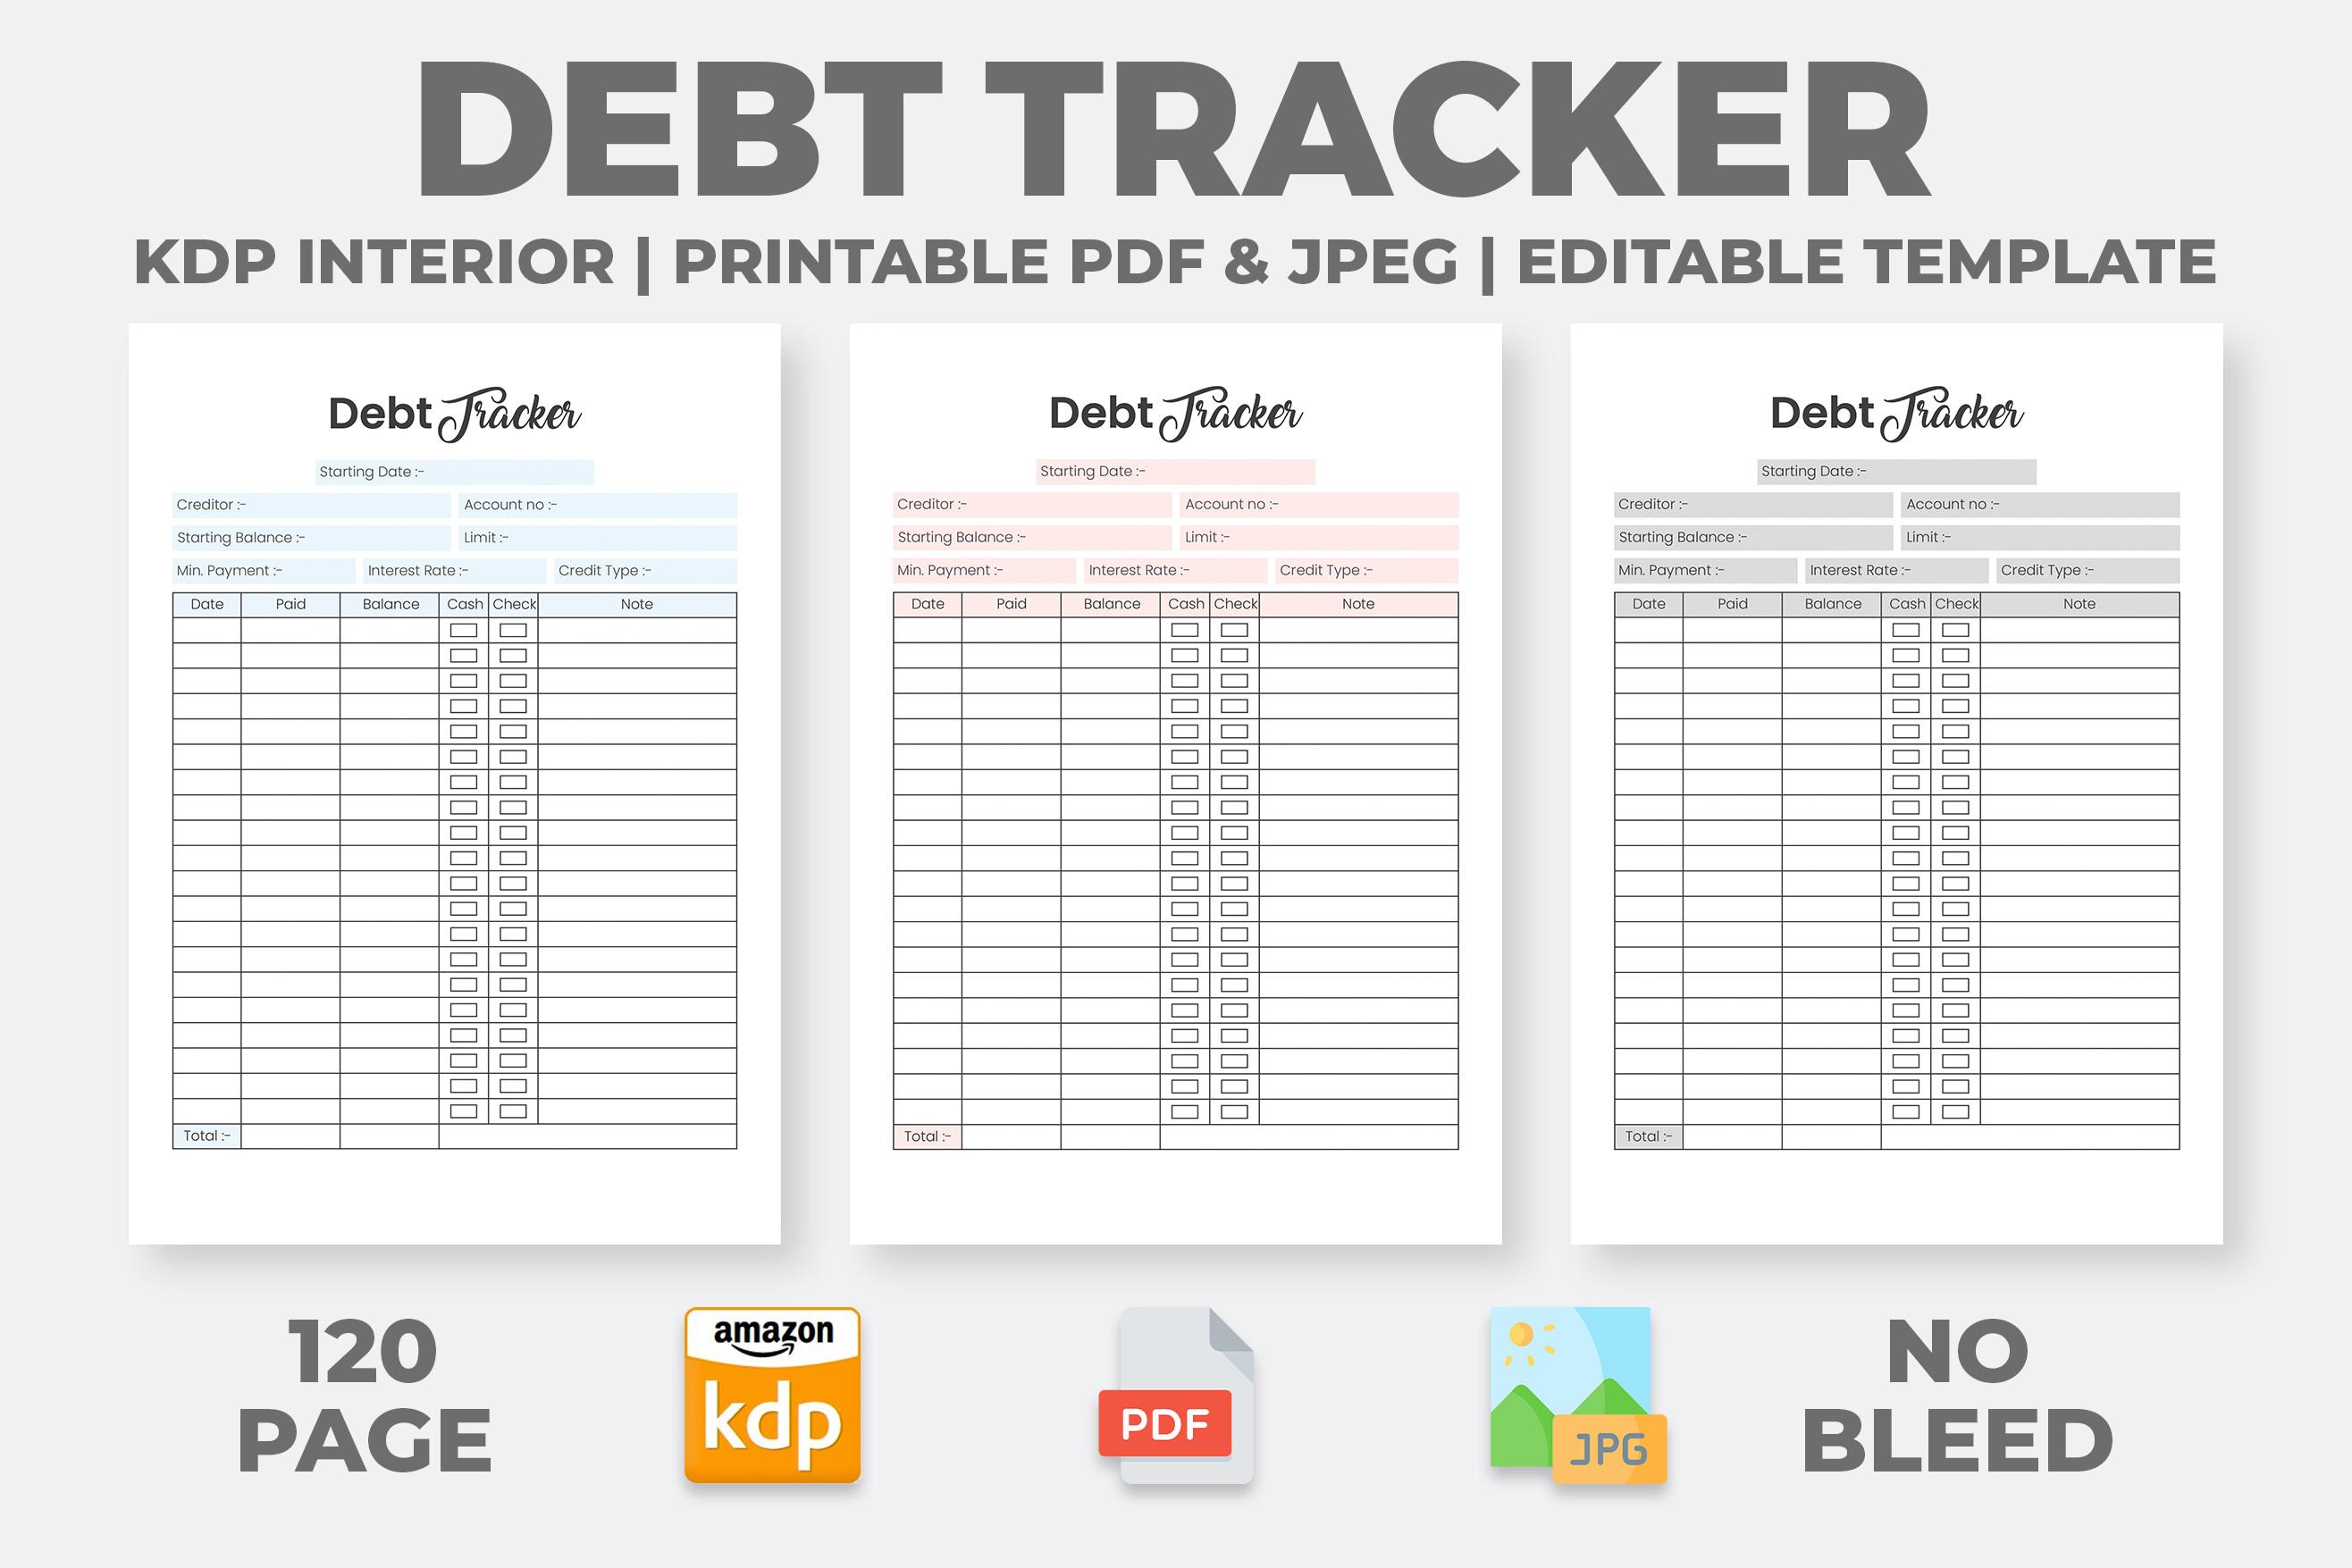 Debt Tracker - KDP Interior